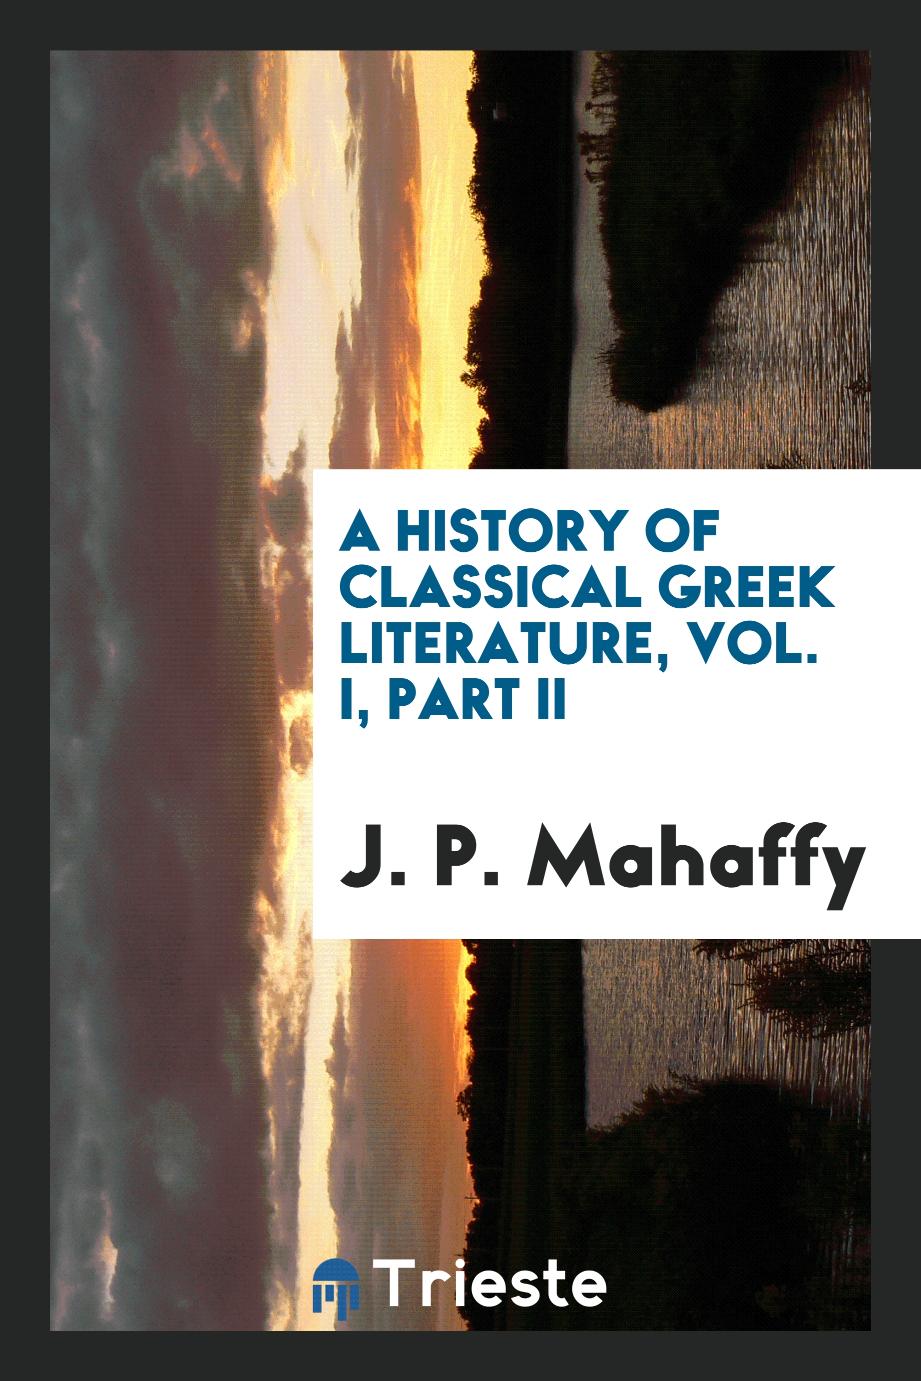 A history of classical Greek literature, Vol. I, Part II